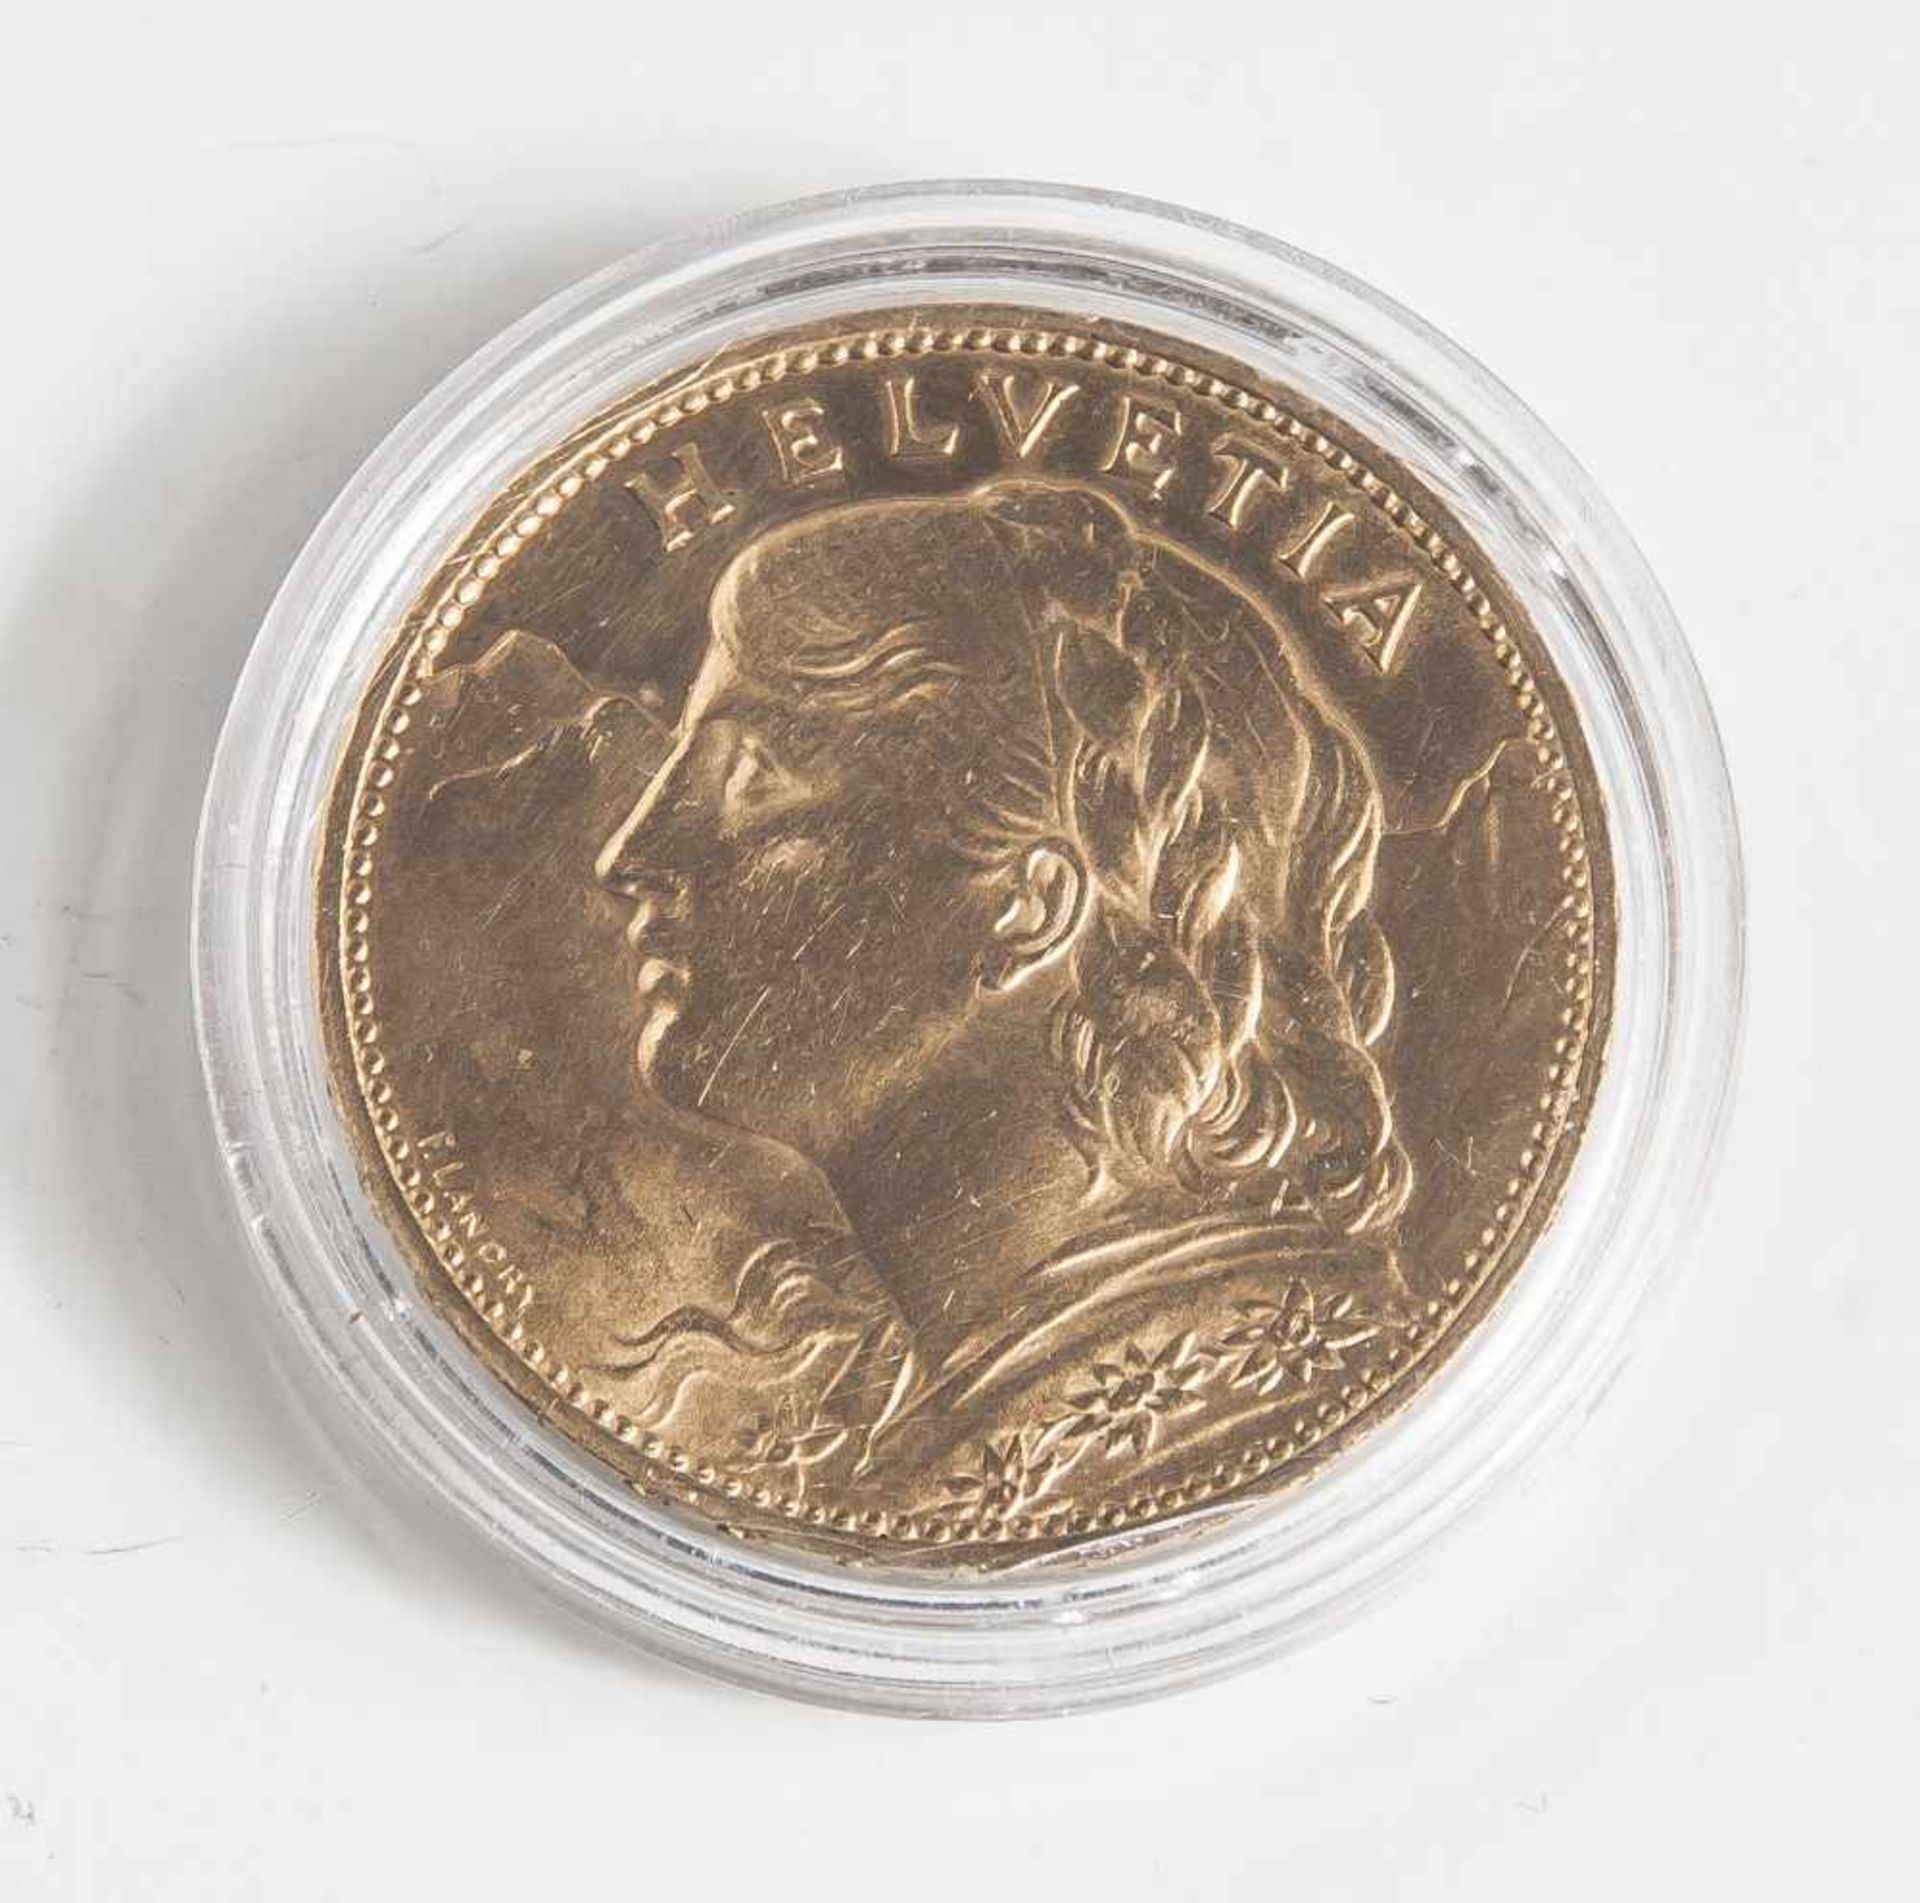 100 Schweizer Franken, 1925, Vreneli, Gold 900/1000, "B", DM waagerecht: 35,73, DM senkrecht: 35,